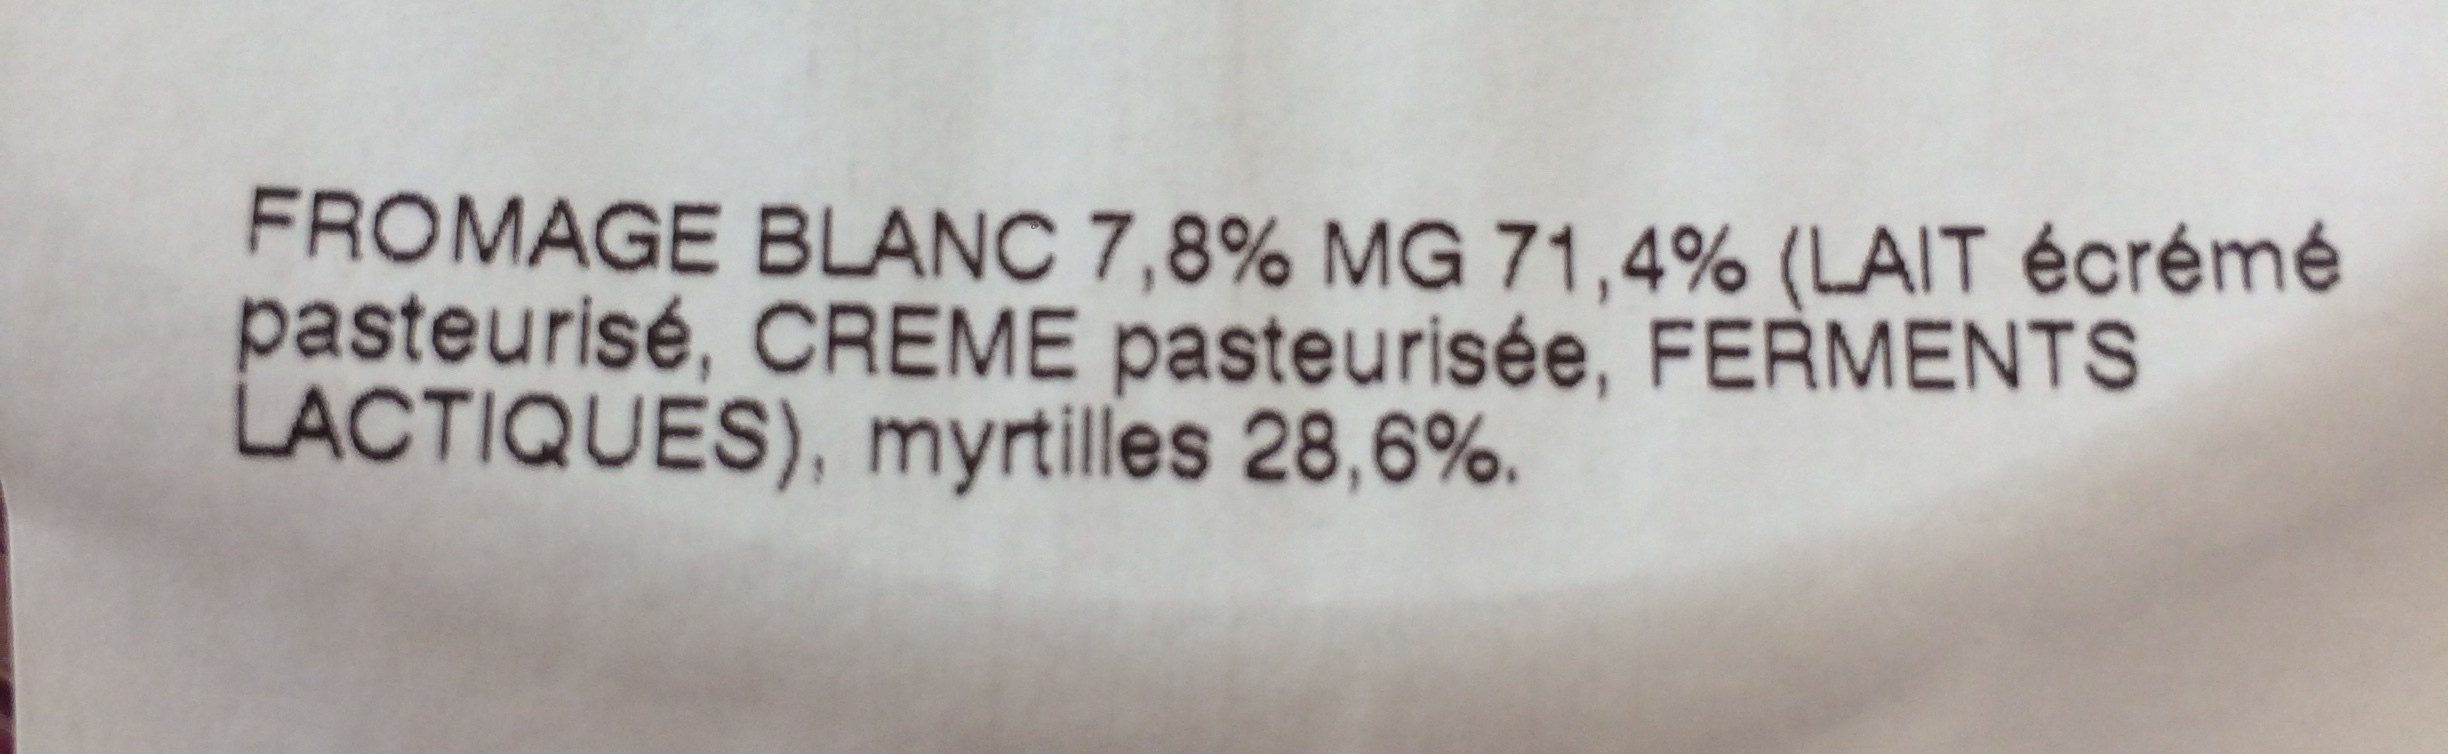 Fromage blanc aux myrtilles - Ingredients - fr